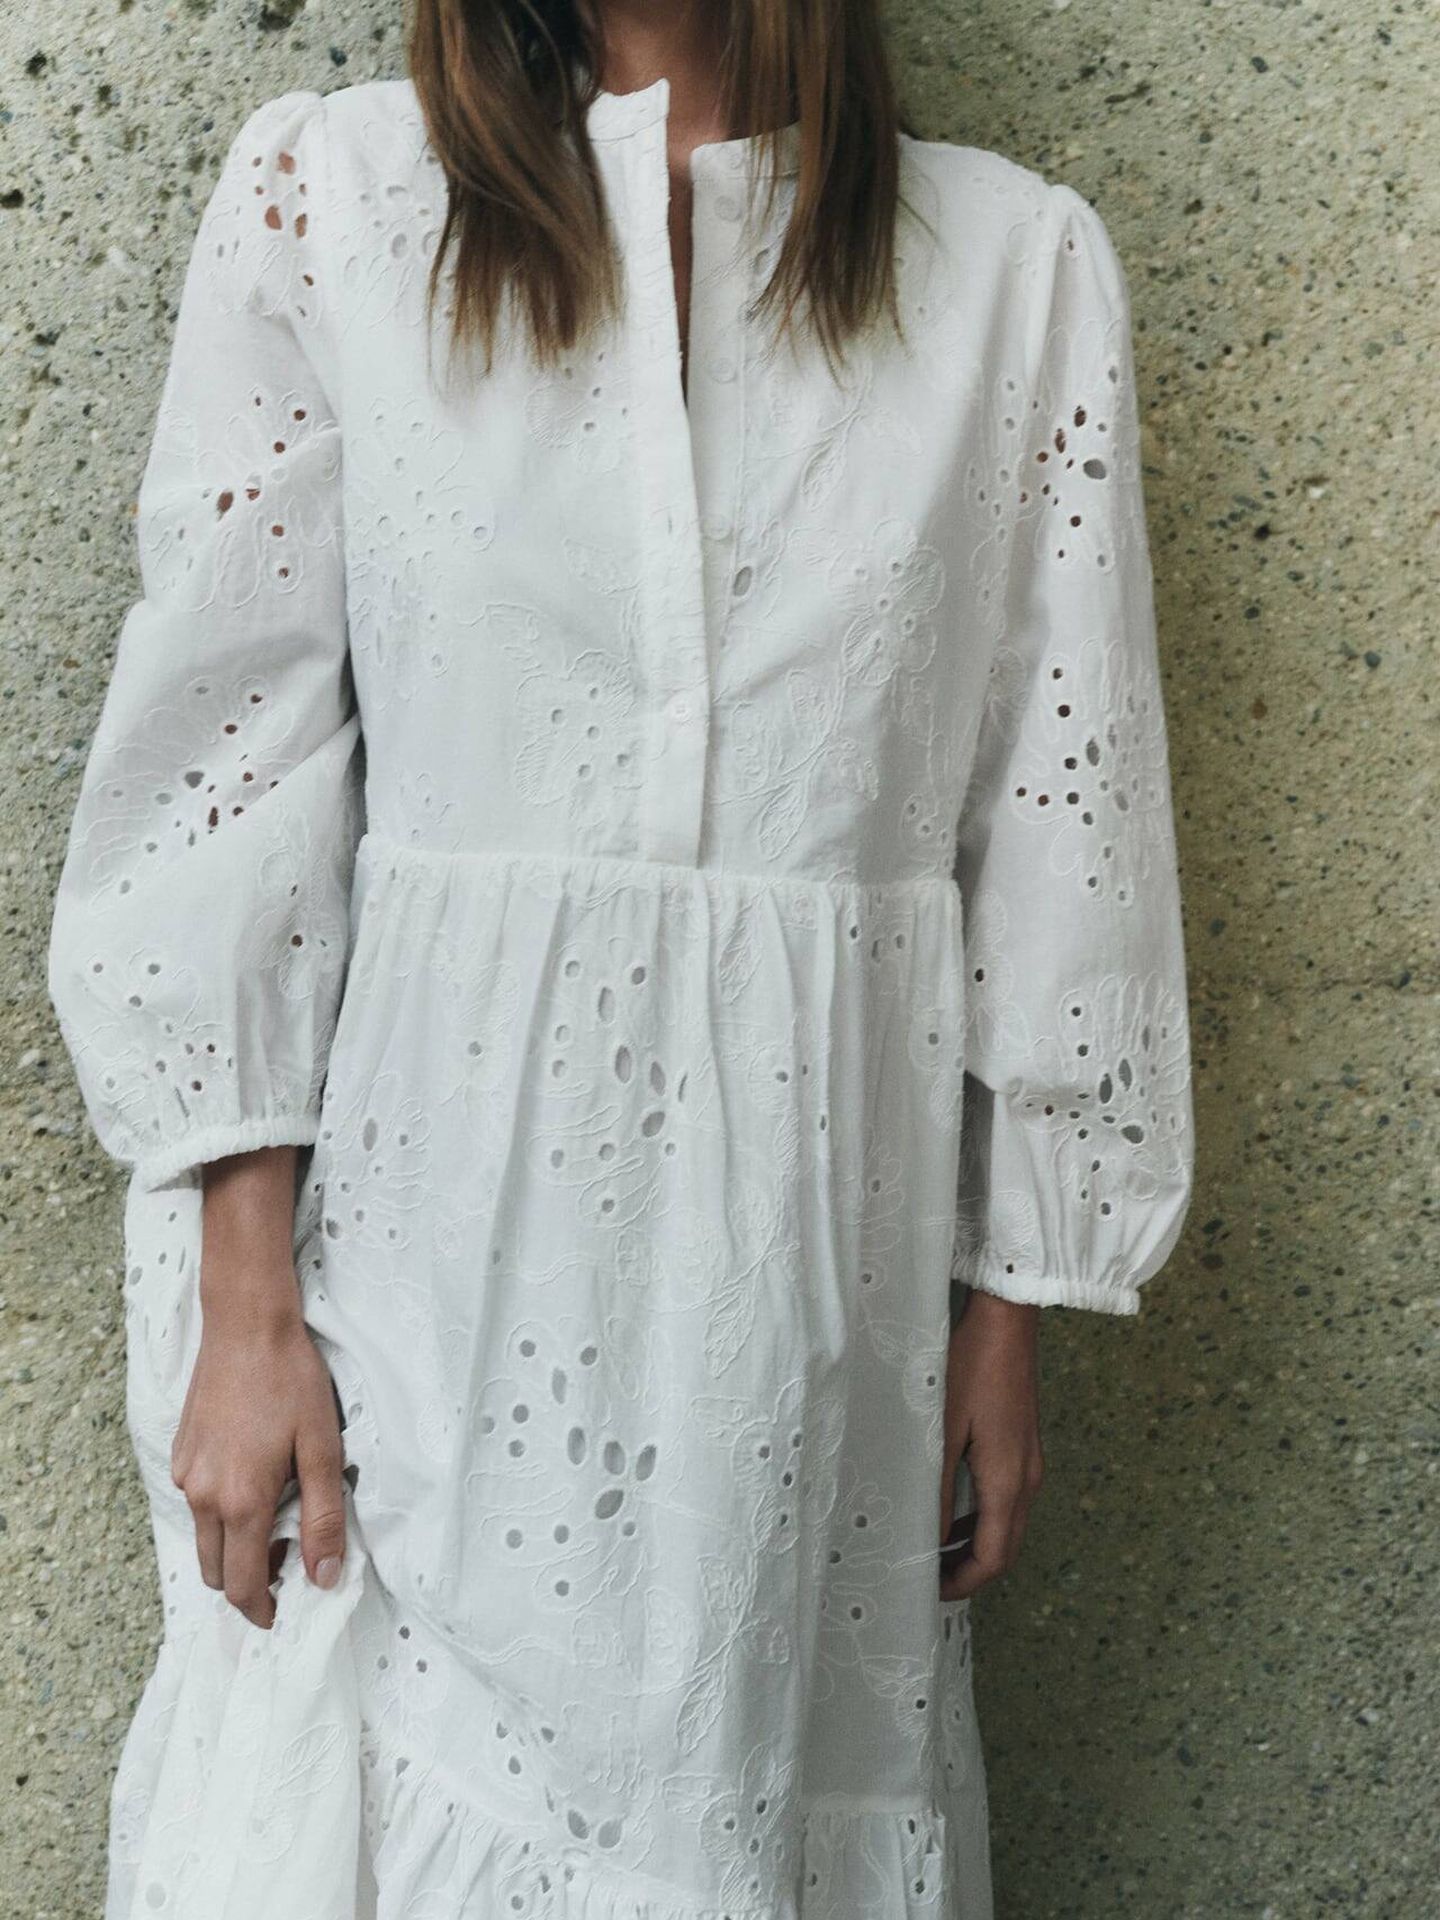 Vestido blanco y calado de novedades. (Zara/Cortesía)